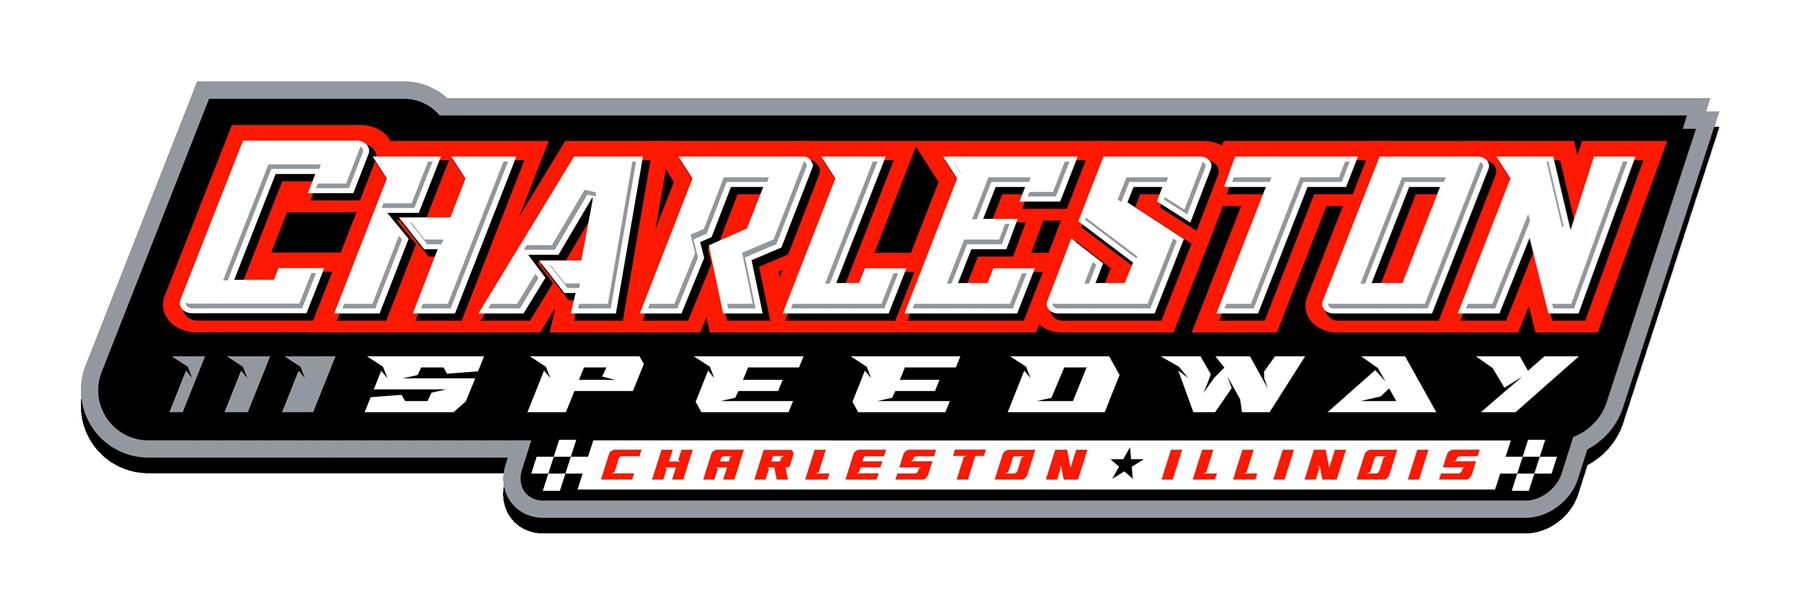 Charleston Speedway